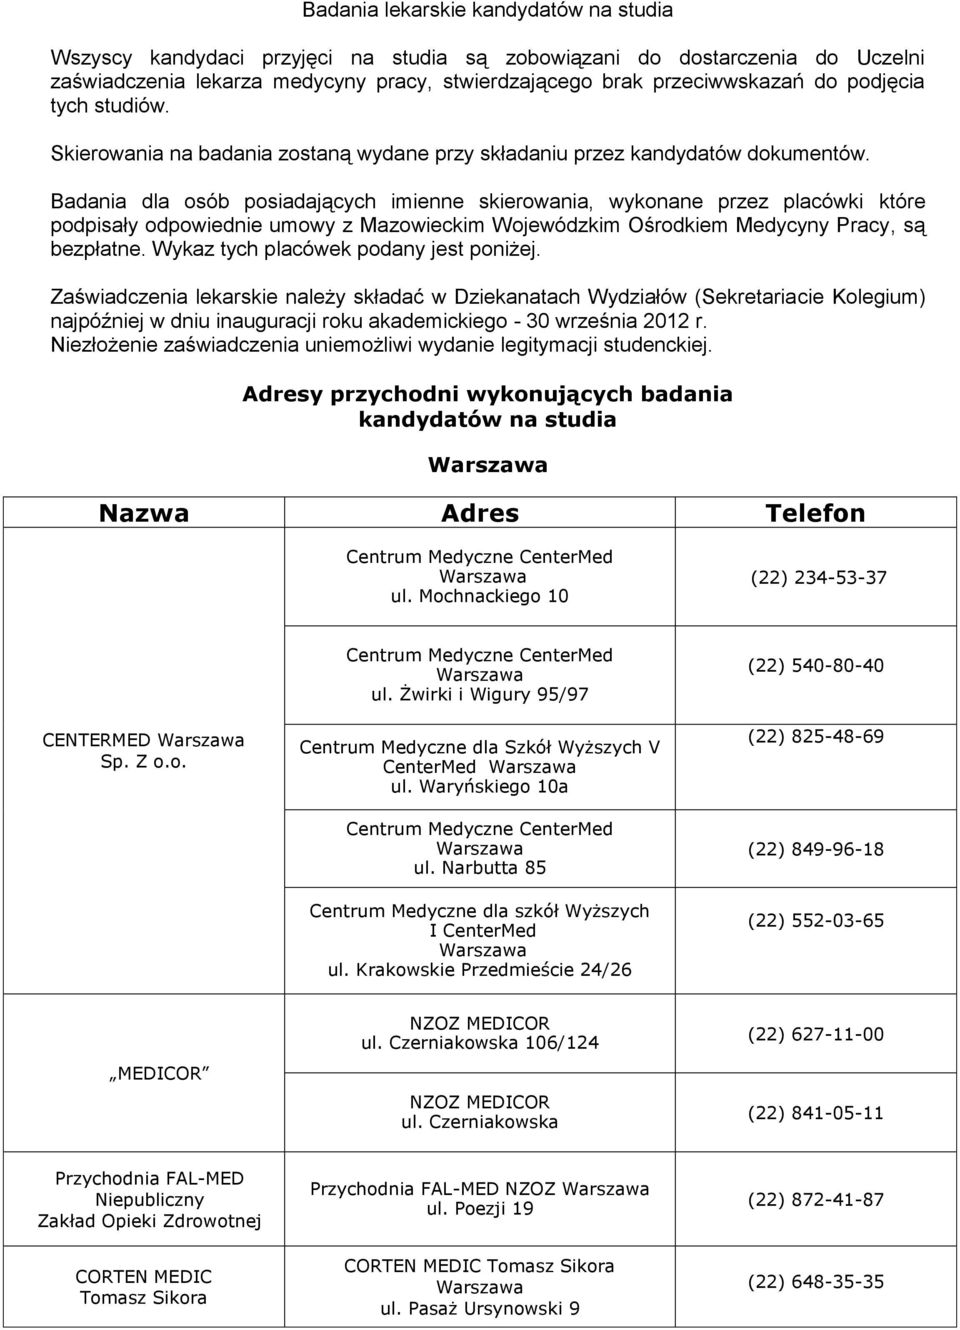 Badania dla osób posiadających imienne skierowania, wykonane przez placówki które podpisały odpowiednie umowy z Mazowieckim Wojewódzkim Ośrodkiem Medycyny Pracy, są bezpłatne.